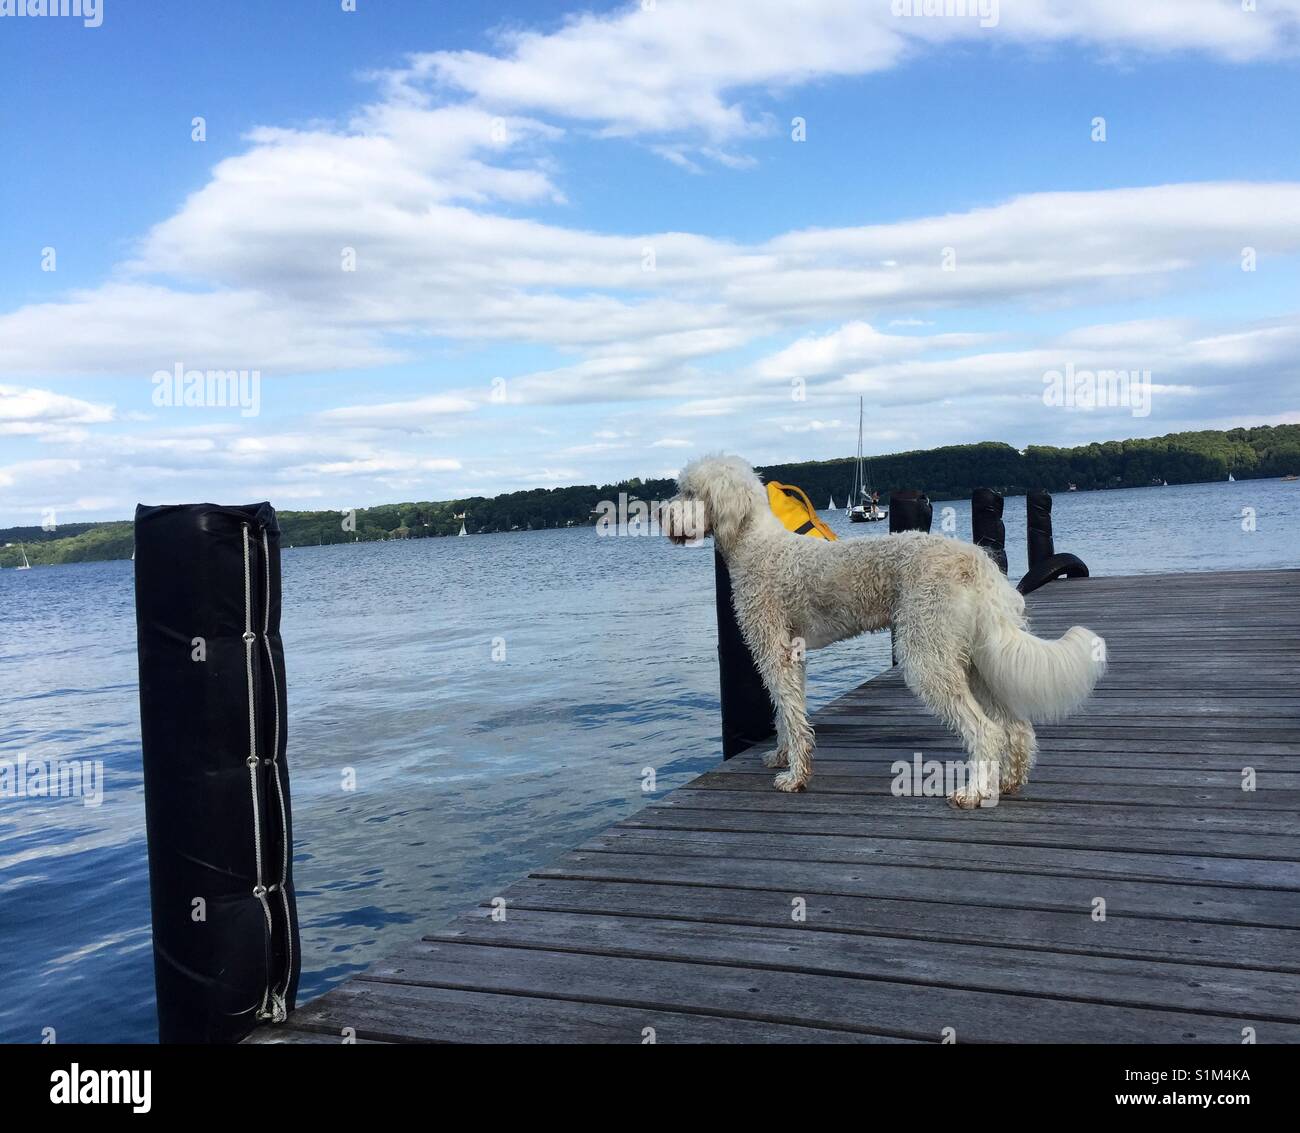 Goldendoodle, white dog, weisser Hund steht stolz, majestätisch und aufmerksam auf Bootssteg am Wasser am Starnberger See, Bayern Stock Photo